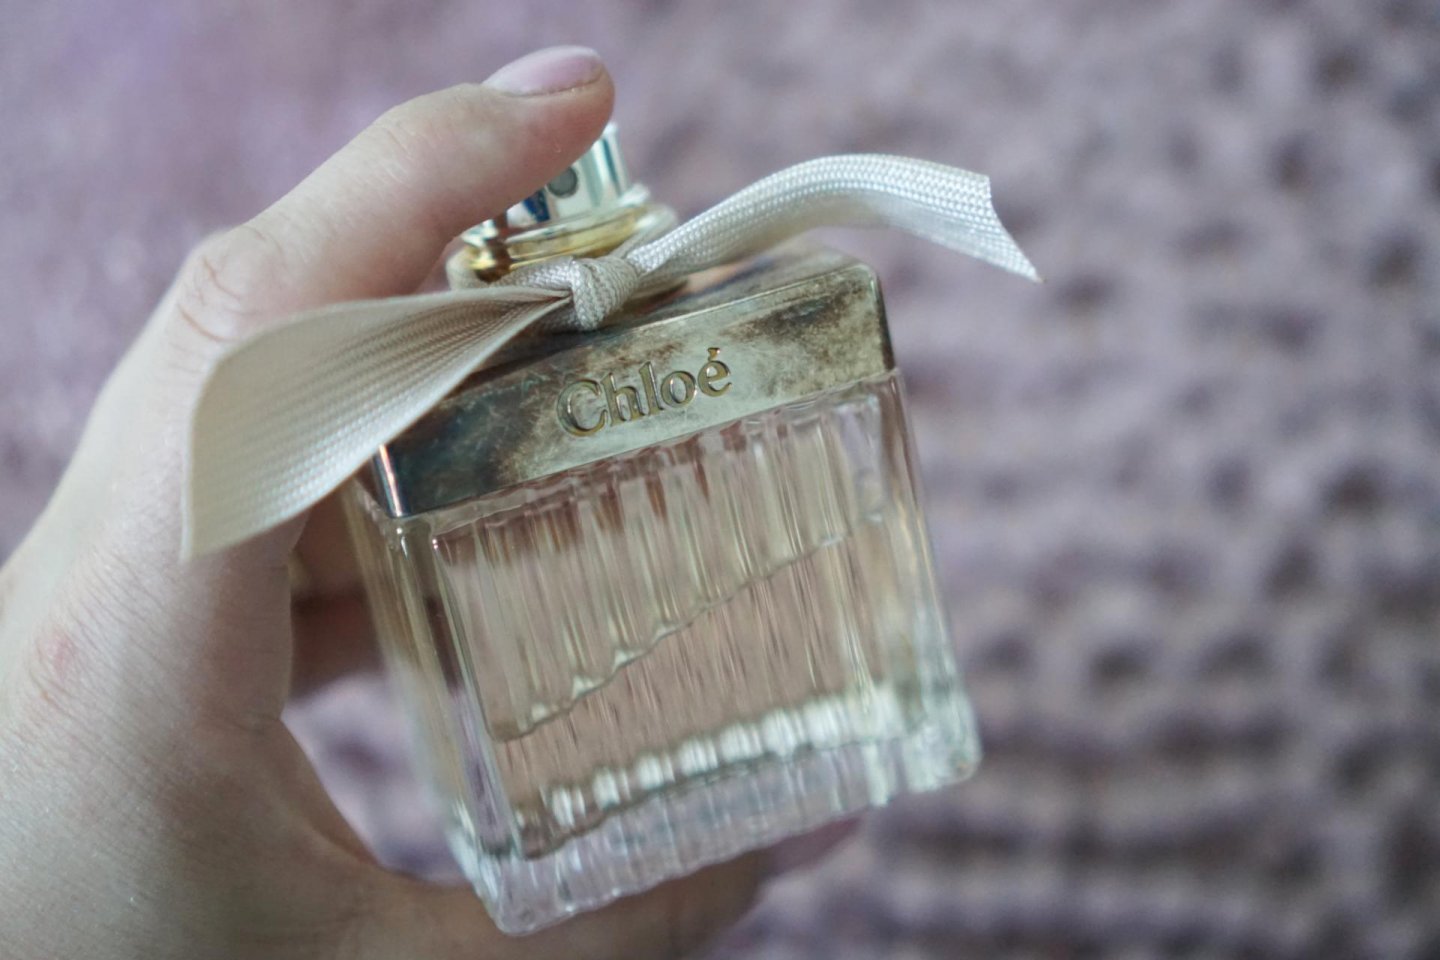 chloe parfum review